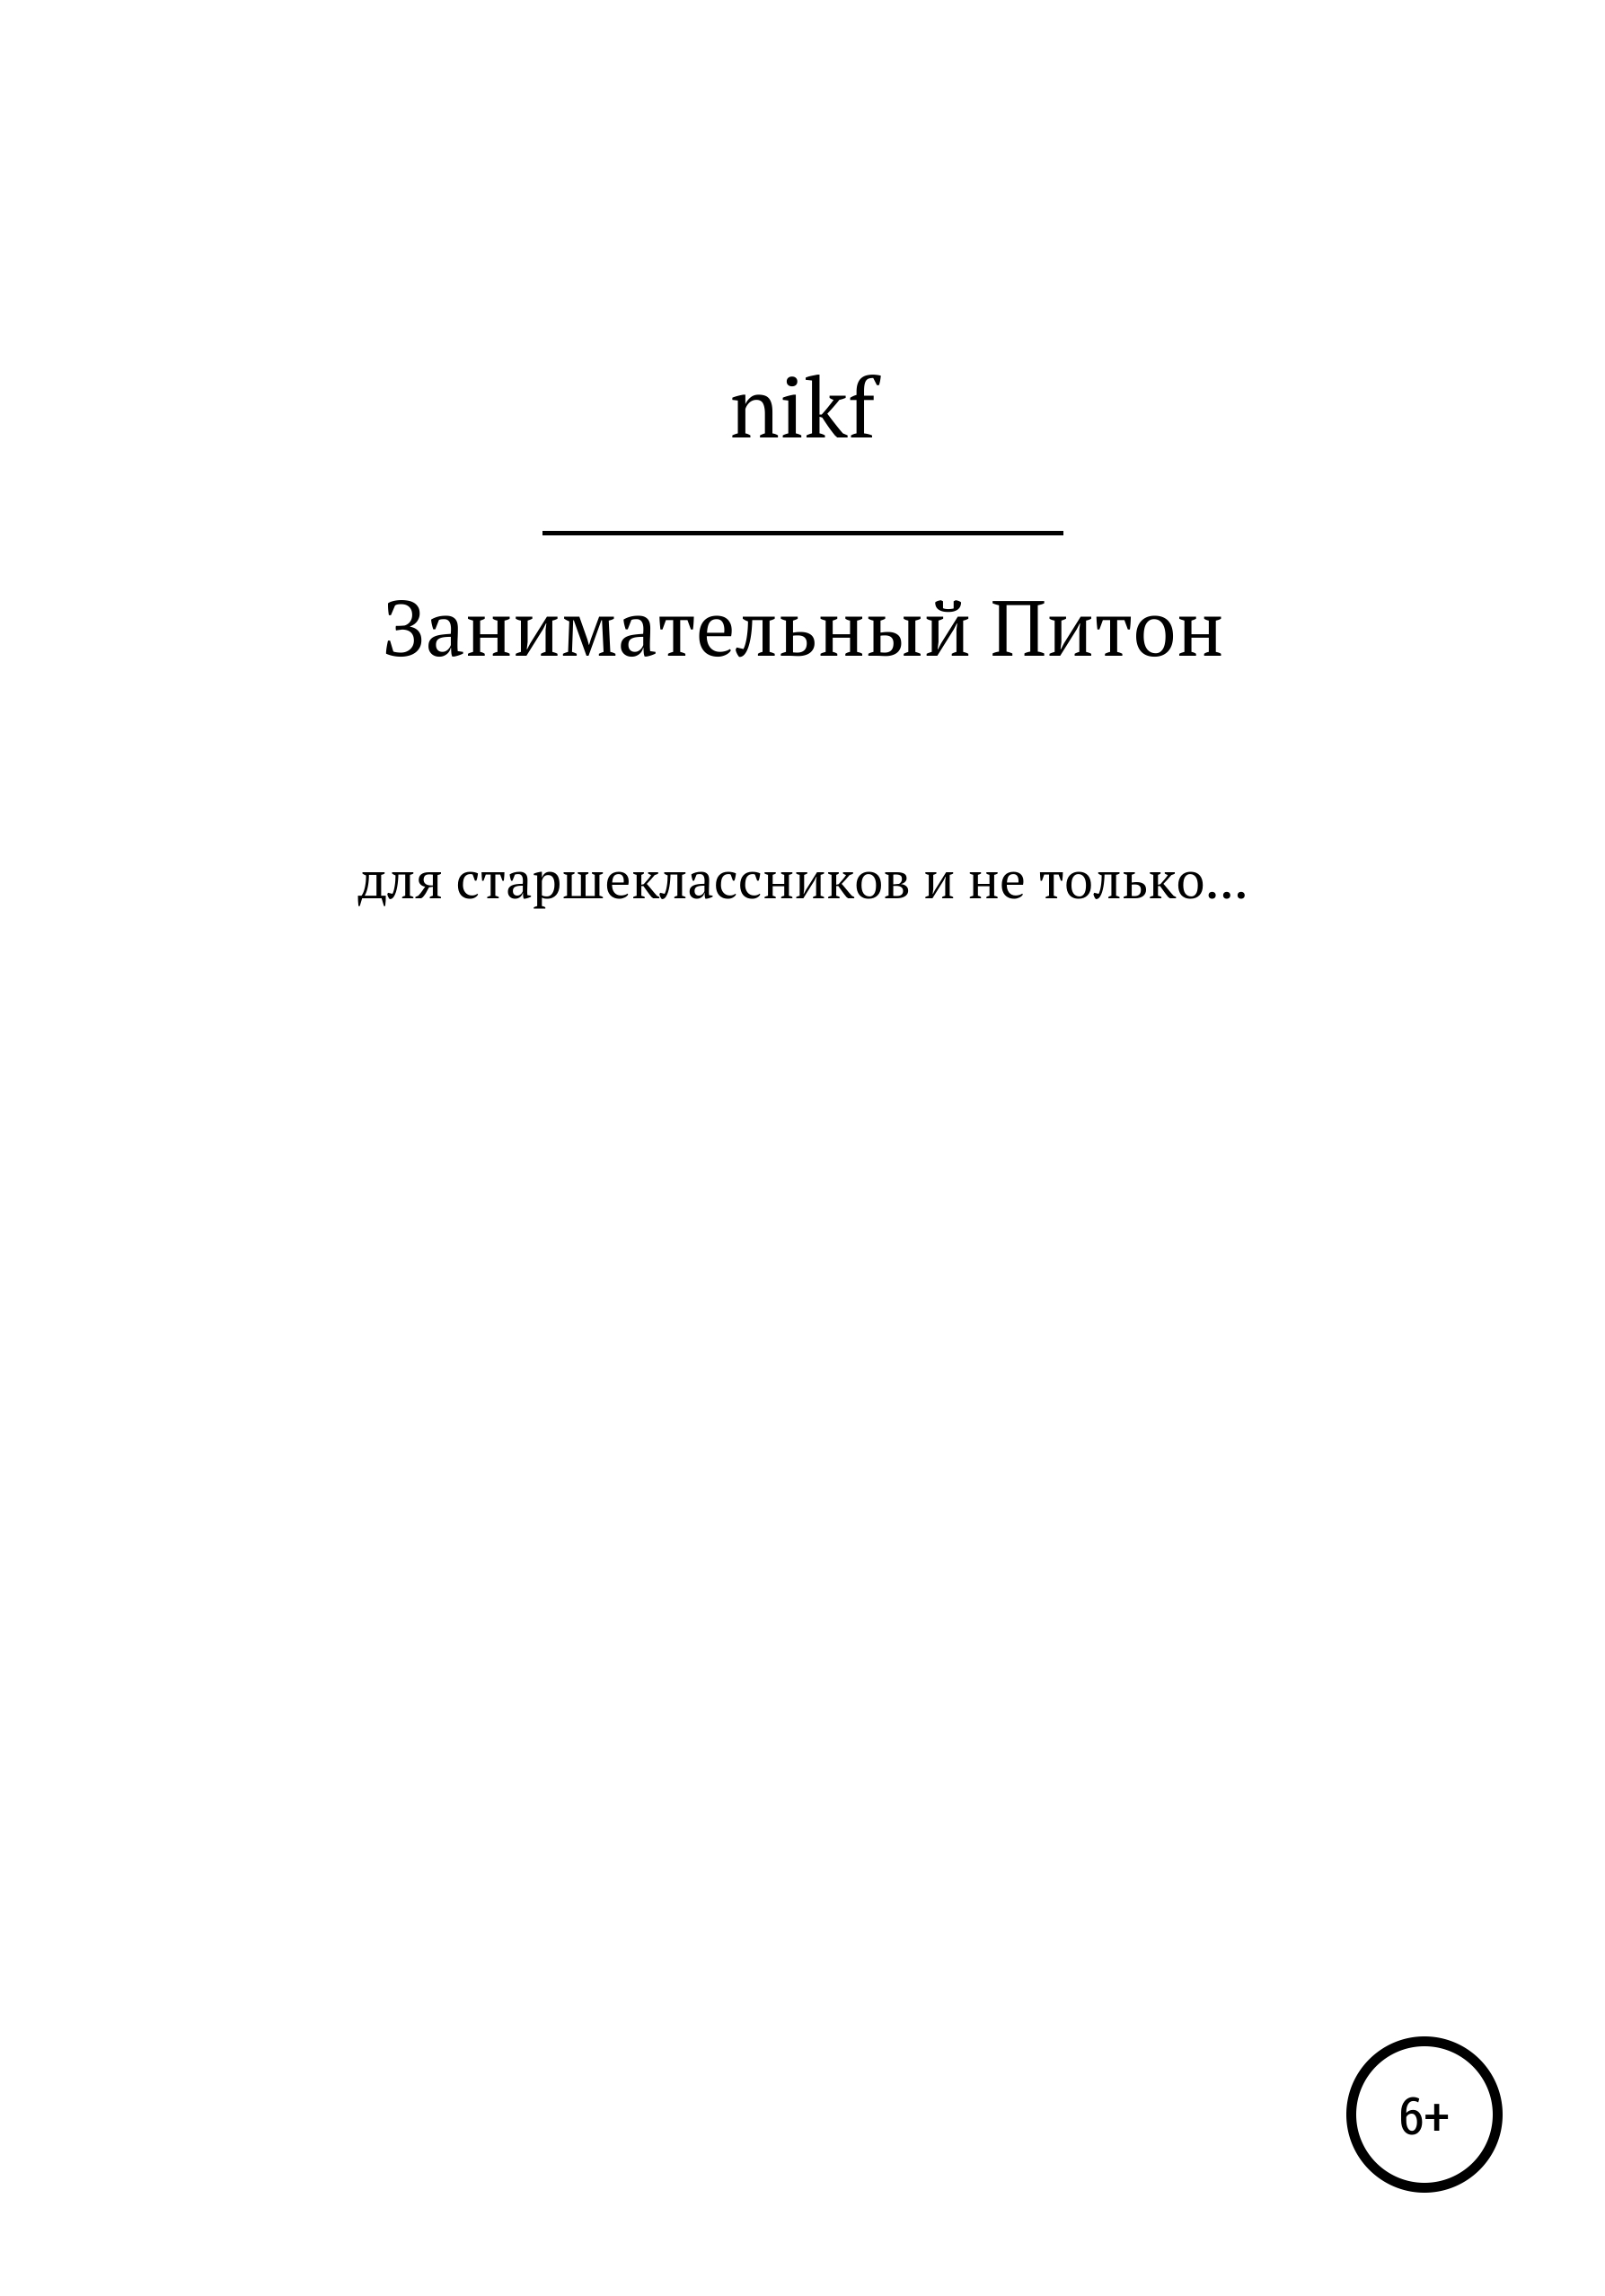 Книга  Занимательный Питон созданная nikf может относится к жанру программирование, учебно-методические пособия. Стоимость электронной книги Занимательный Питон с идентификатором 67597845 составляет  руб.